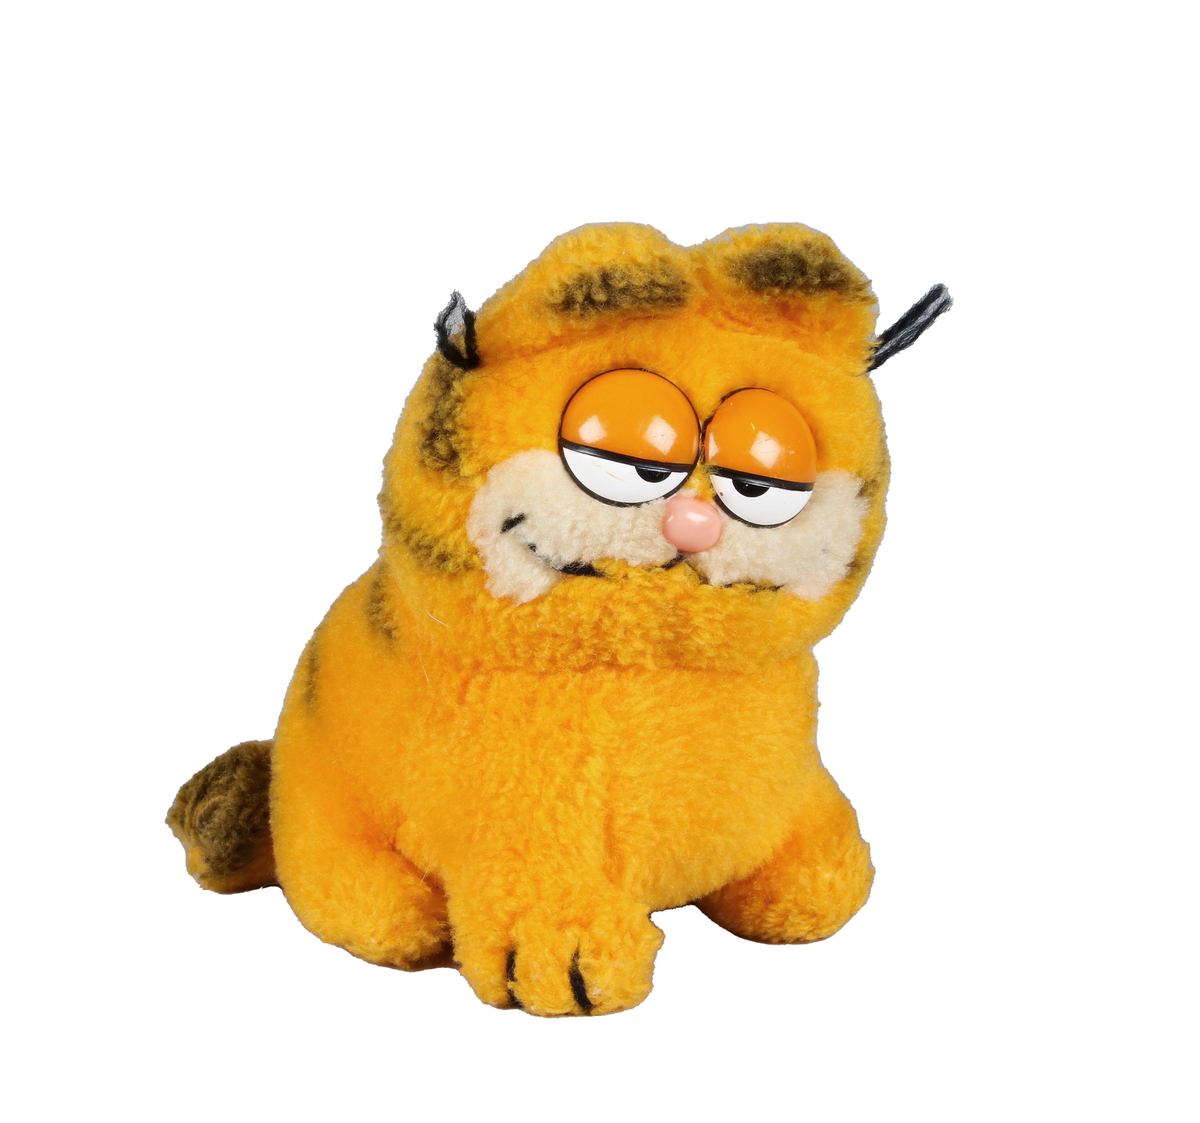 Leksak. Katten Gustaf (Garfield). Gulorange färg med svarta ränder på rygg och svans. Sömniga runda ögon i orangefärgad plast och ljusröd nos.